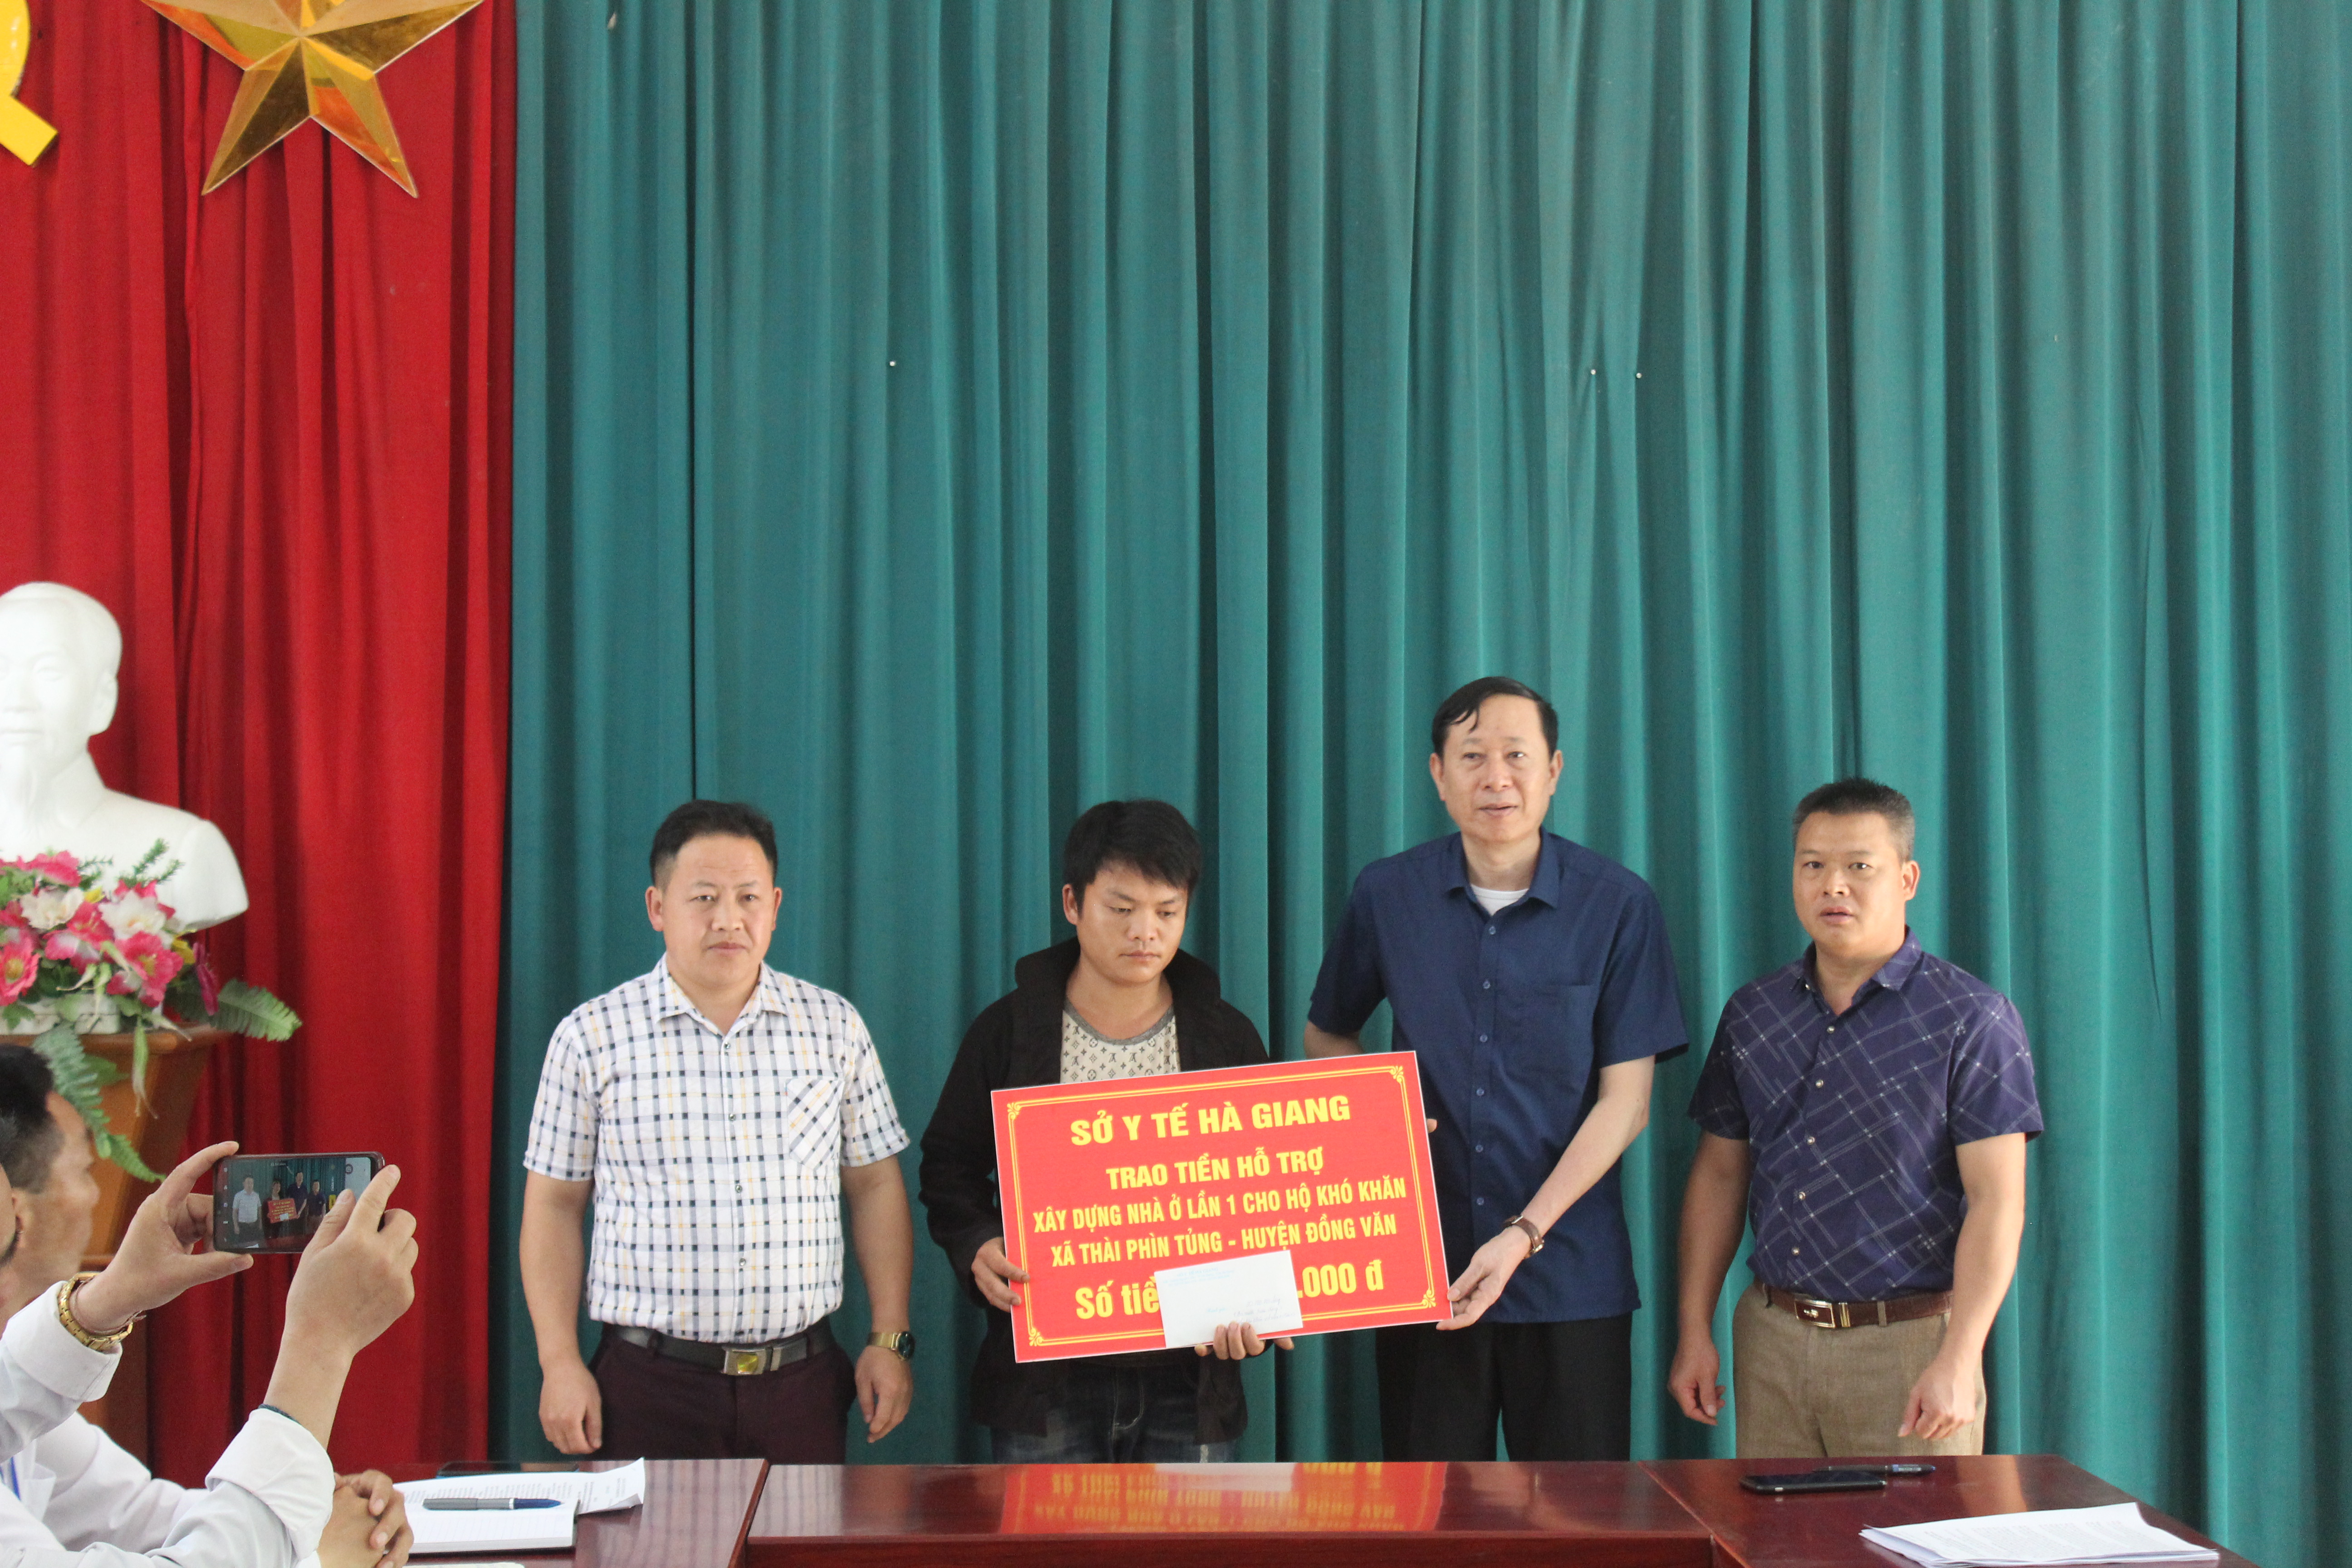 Đoàn công tác của Sở Y tế đã đến thăm, làm việc và trao kinh phí hỗ trợ xây nhà cho hộ nghèo tại xã Thài Phìn Tủng, huyện Đồng Văn